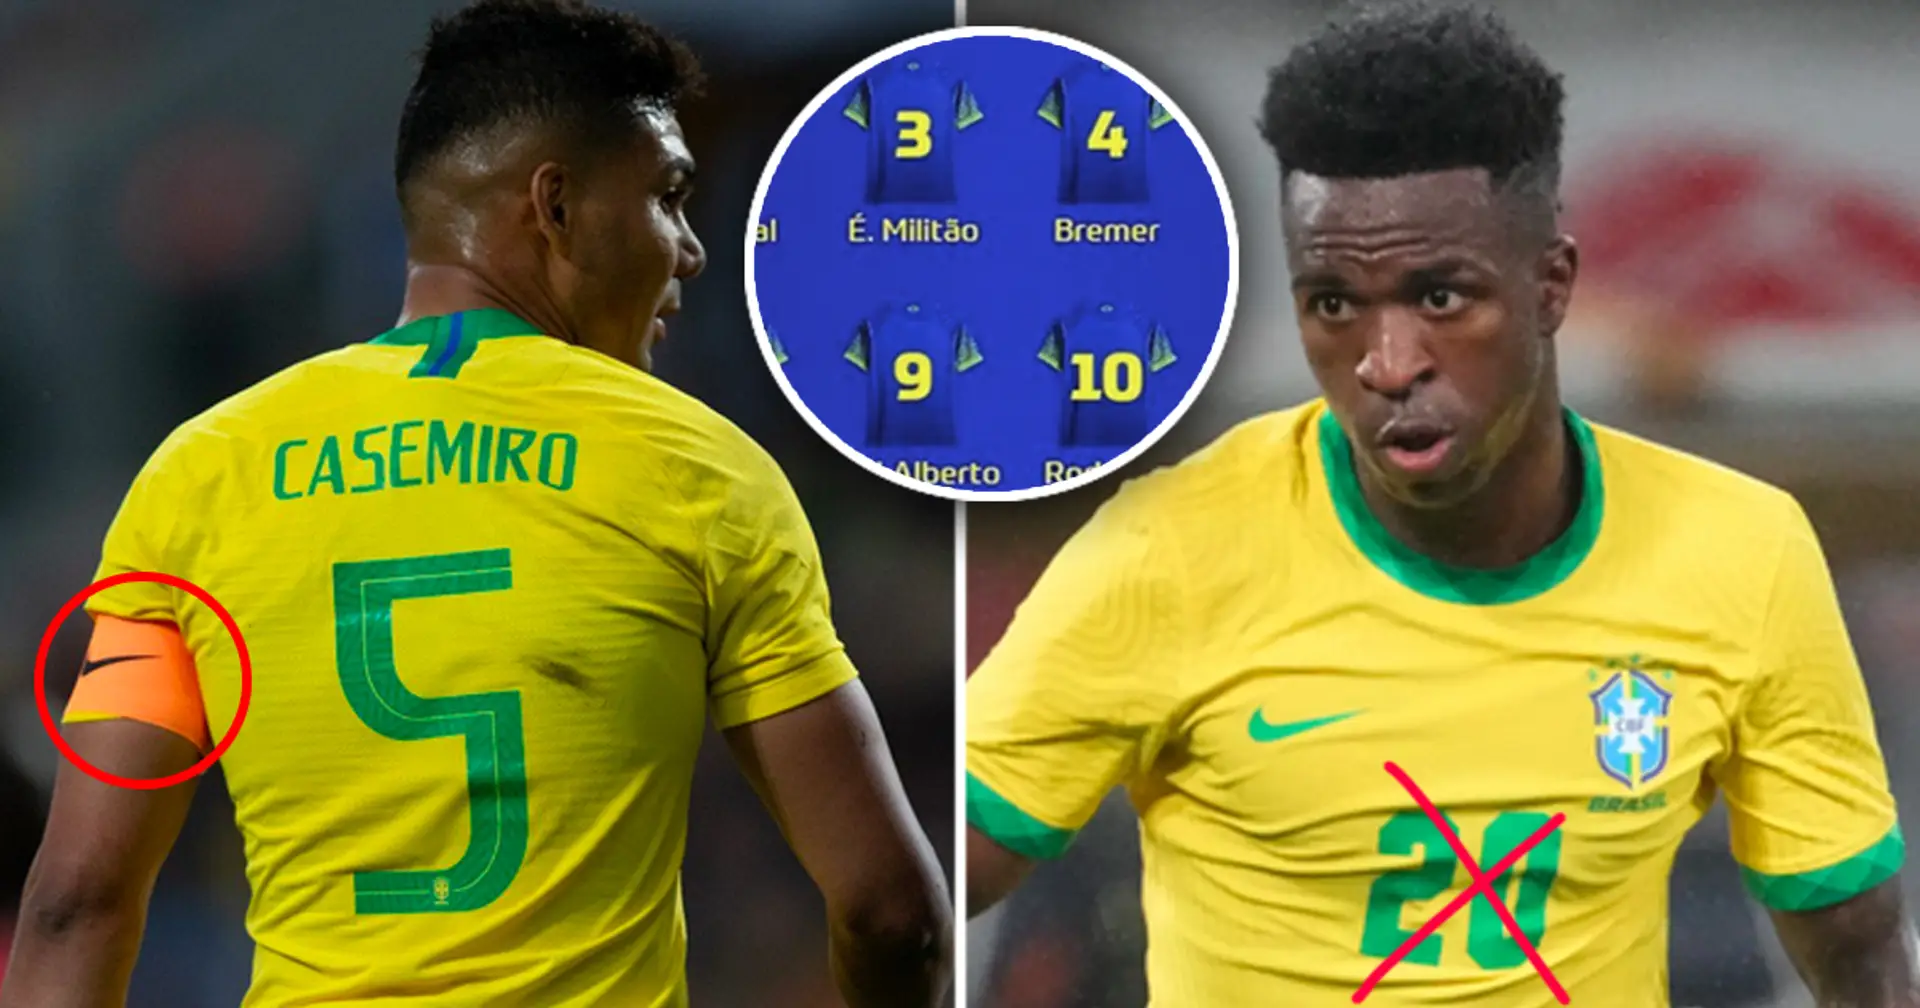 Casemiro nommé capitaine, Vinicius obtient un nouveau numéro : 4 changements intéressants dans l'équipe du Brésil